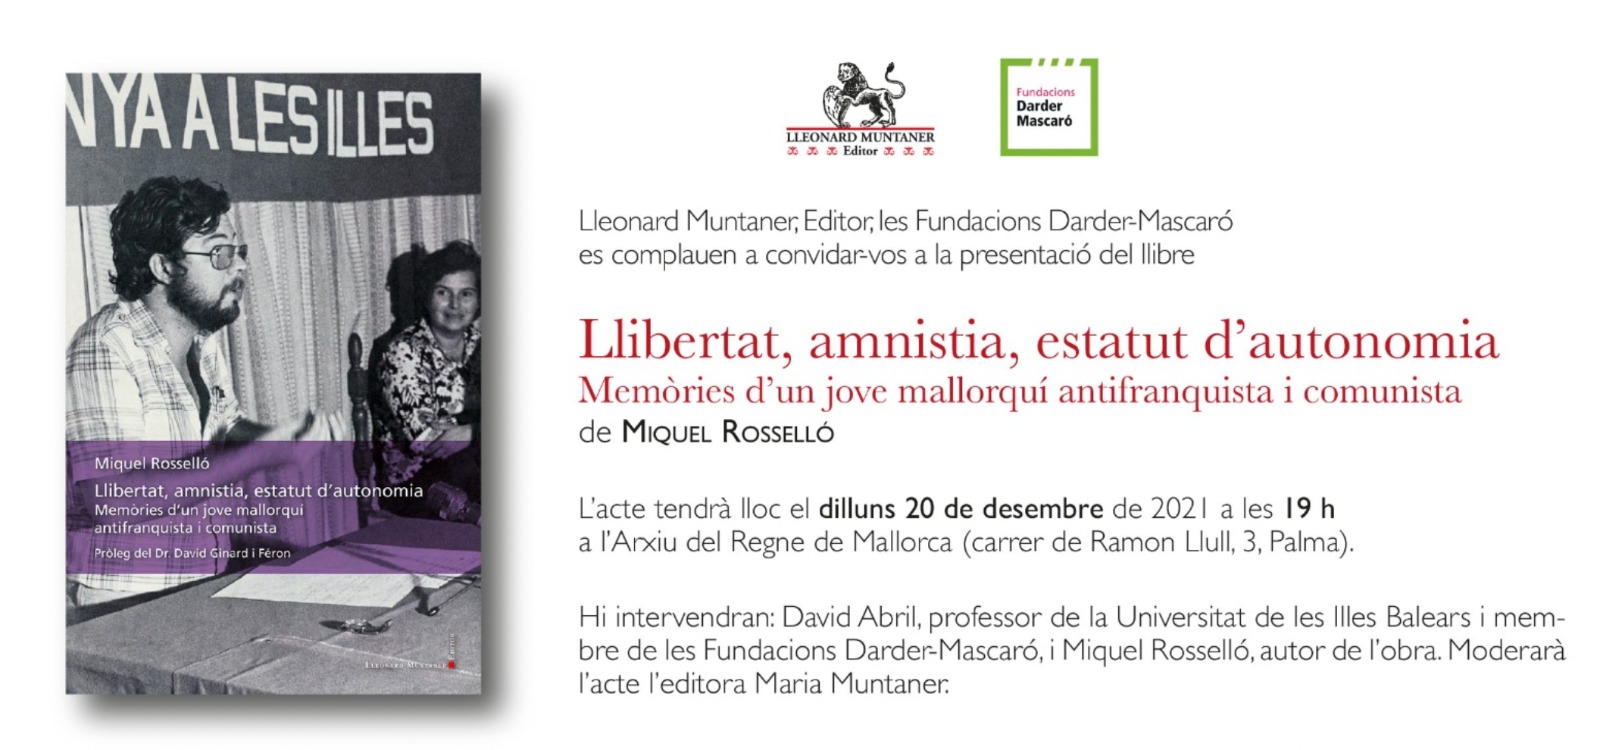 Llibertat, amnistia, estatut d’autonomia / Memòries d’un jove mallorquí antifranquista i comunista